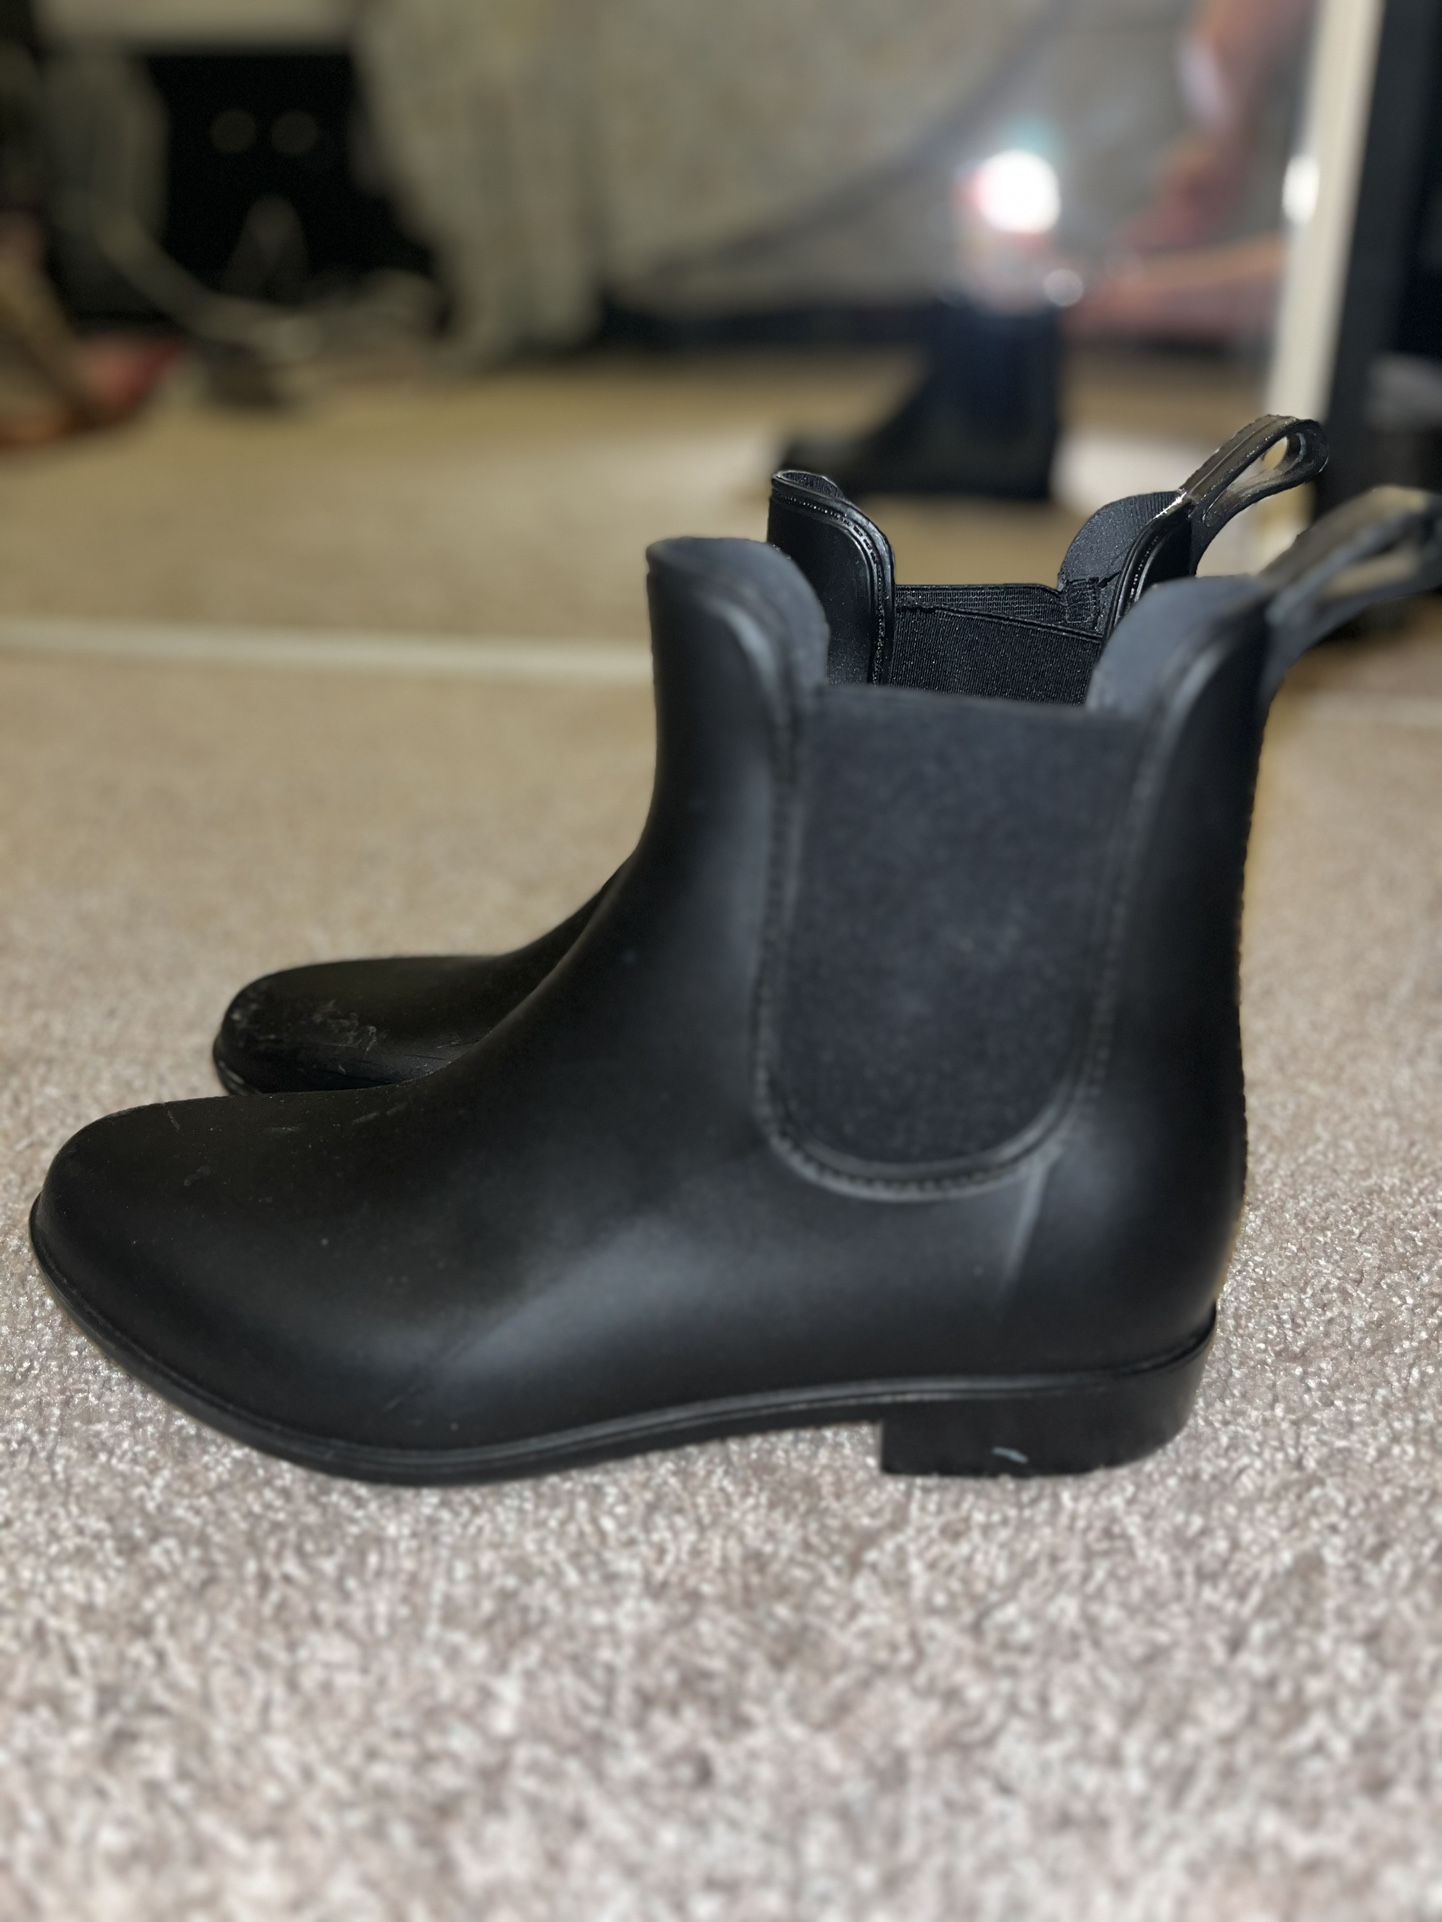 Capelli New York Rain boots - Size 9